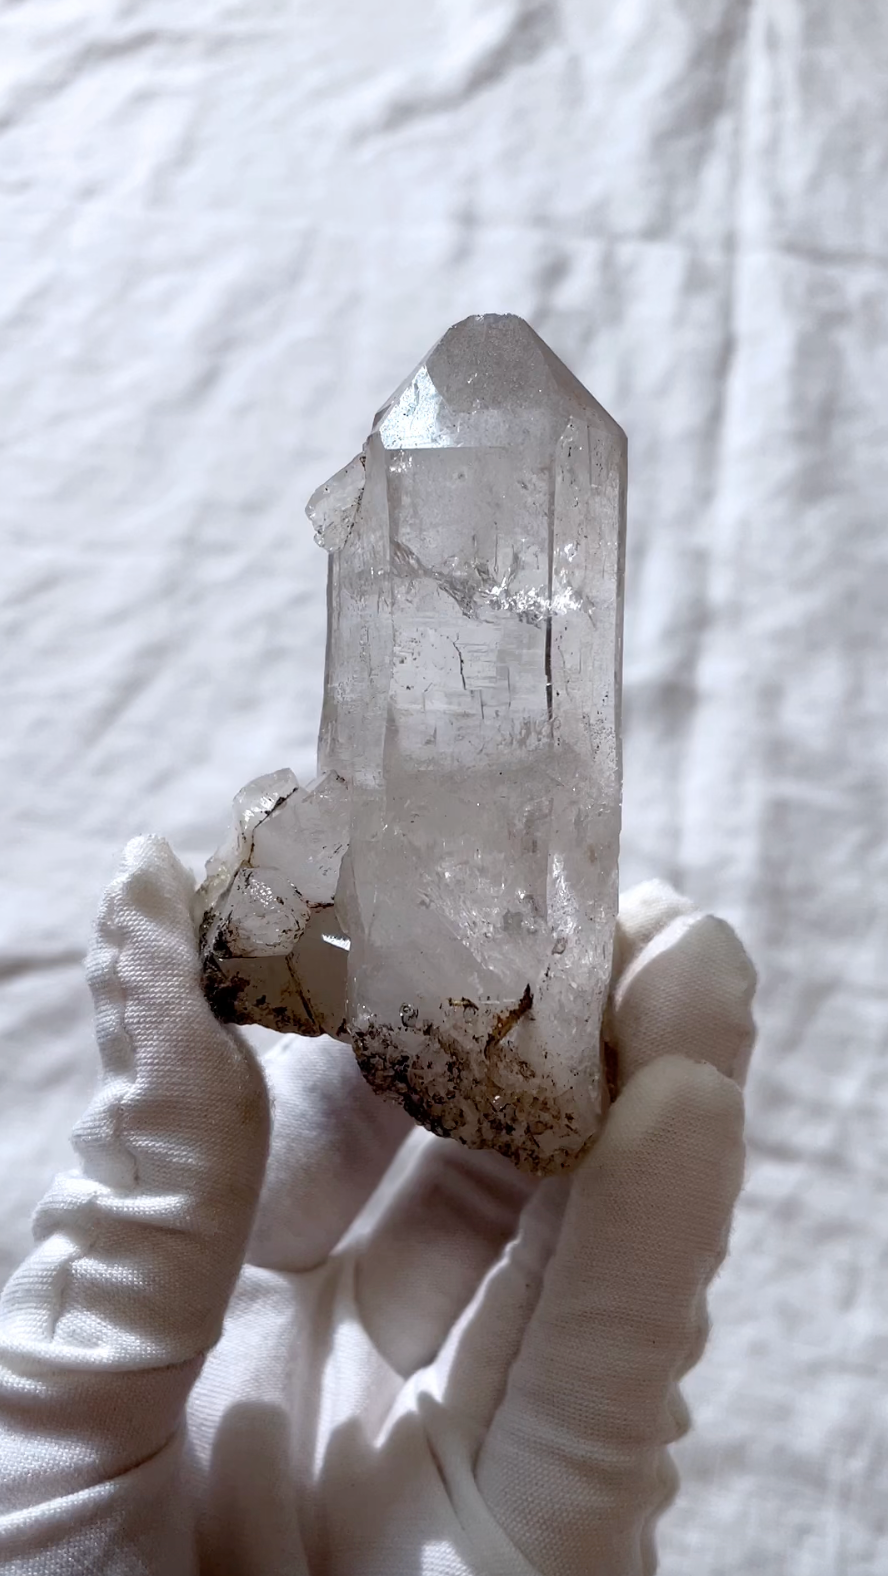 Tibetan White Quartz Crystal Energy Protection Healing